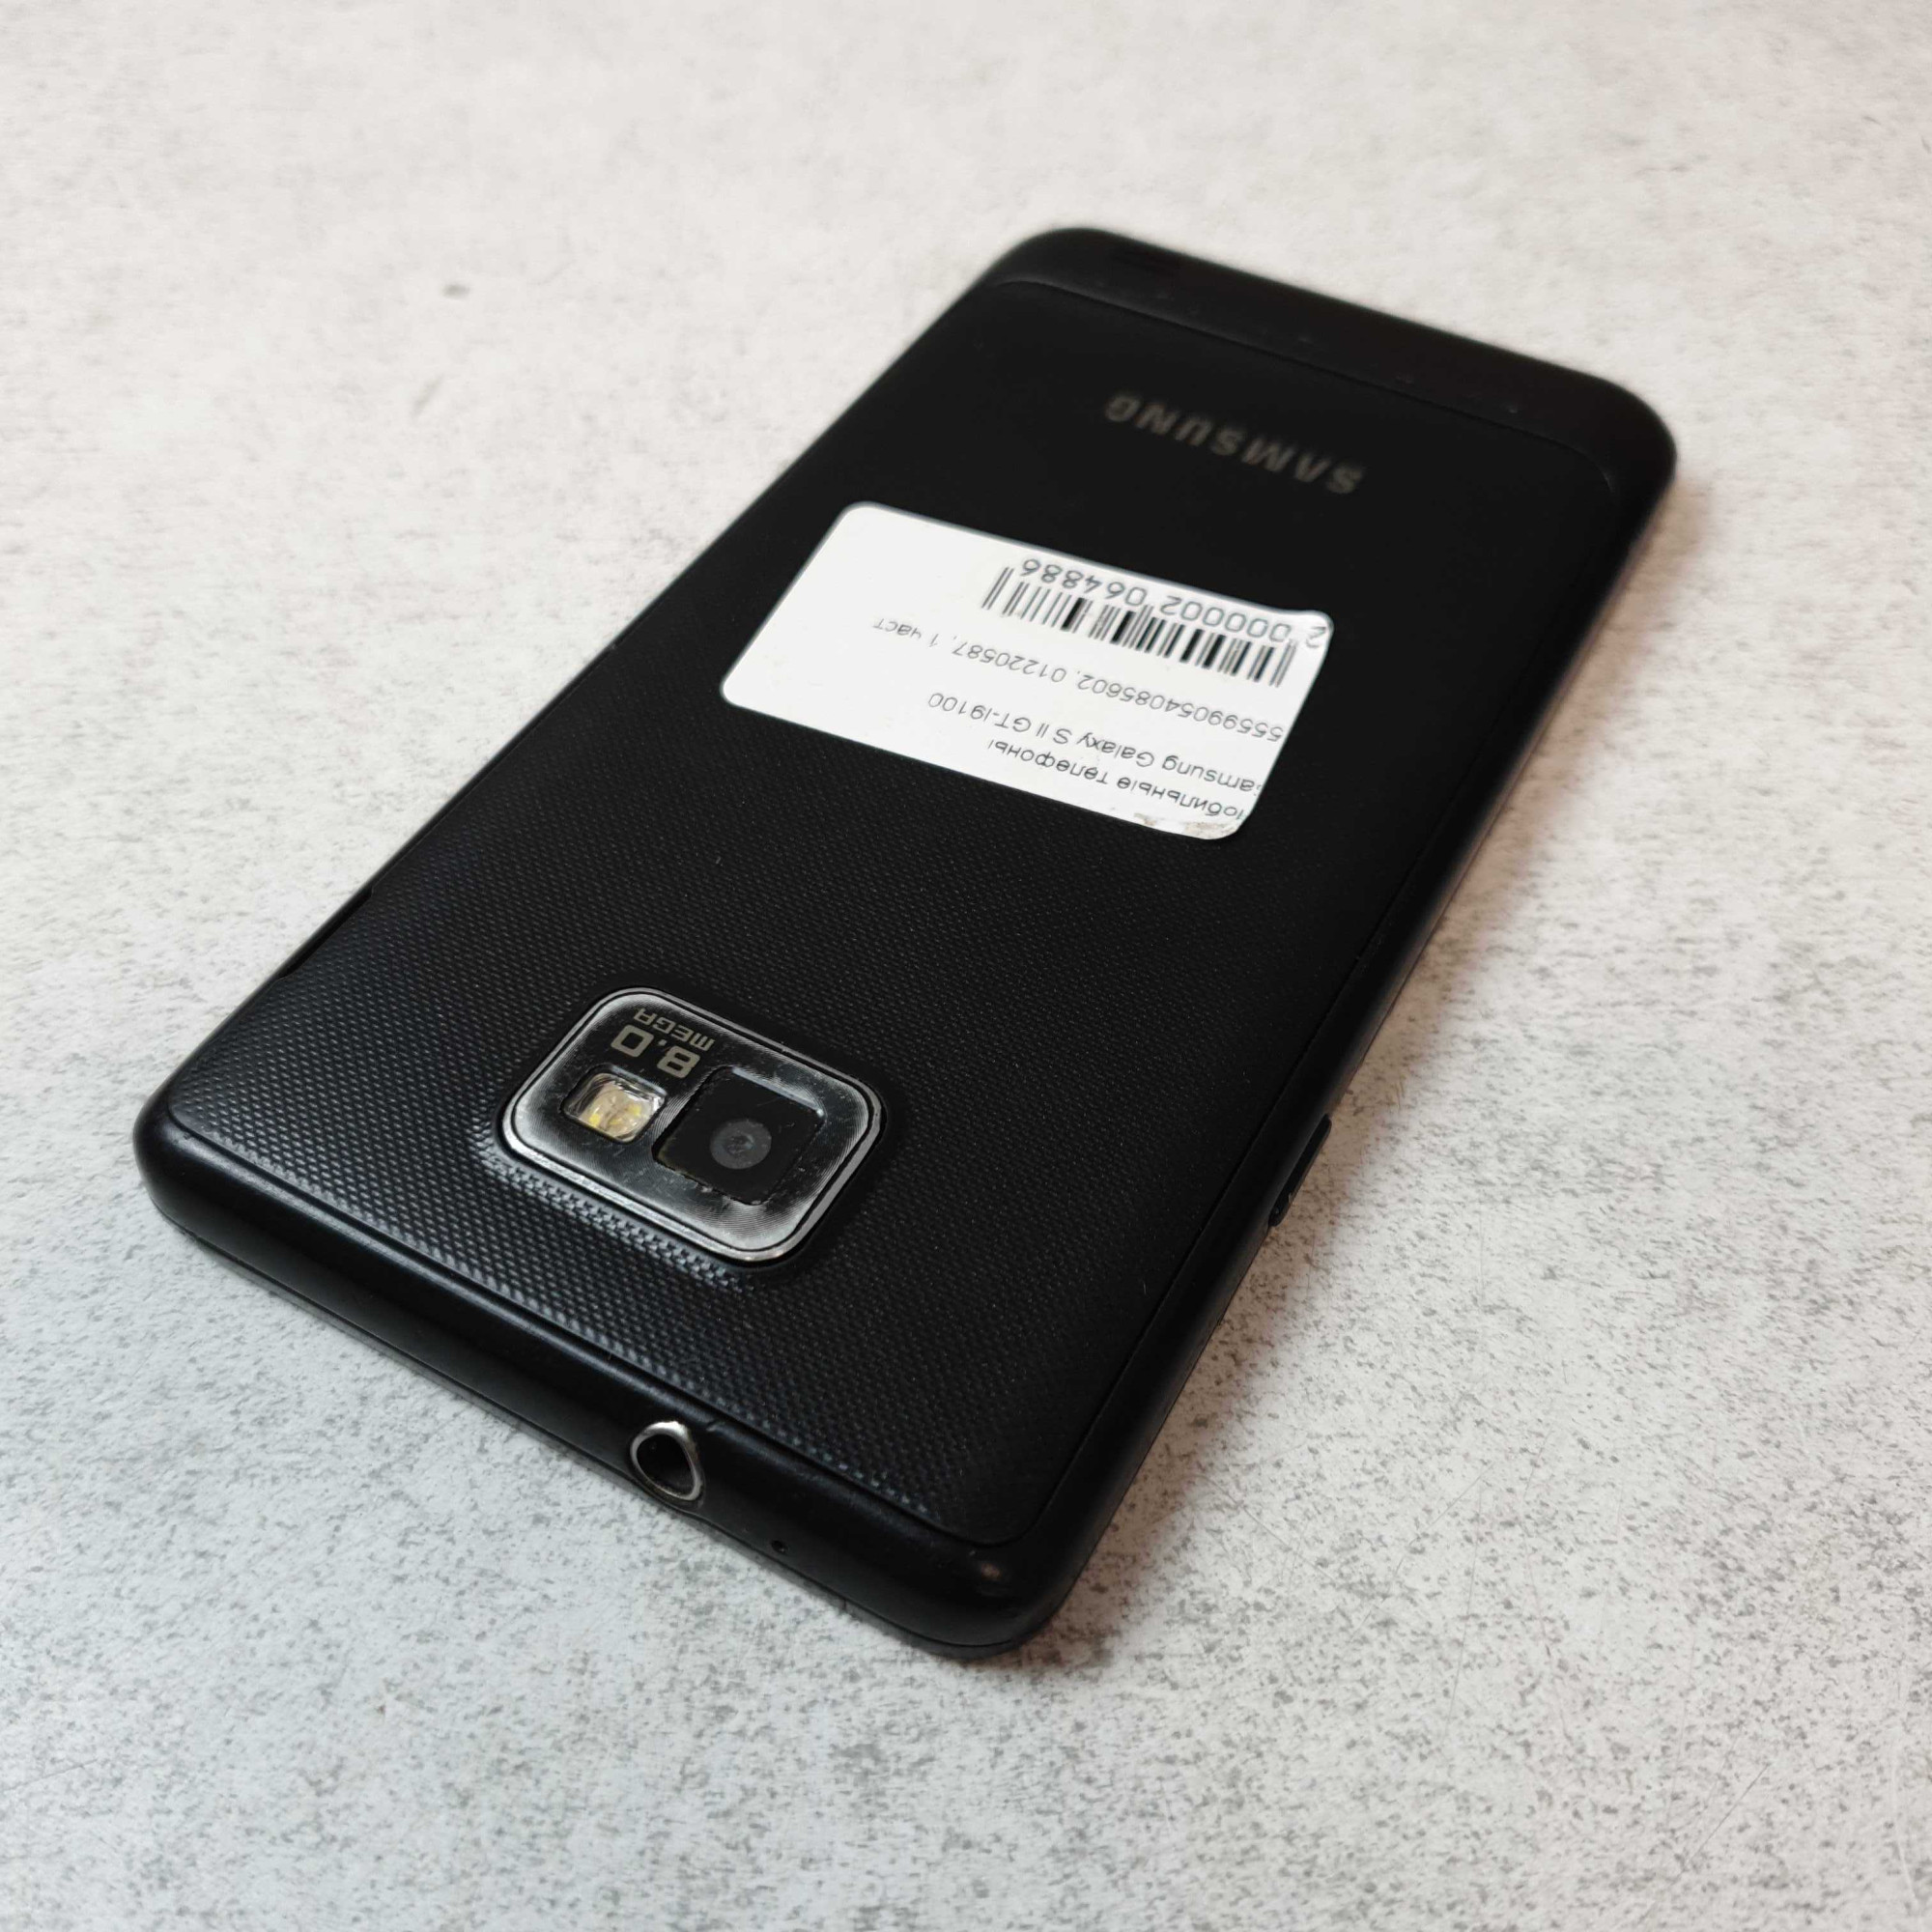 Samsung Galaxy S2 (GT-I9100) 1/16Gb  11